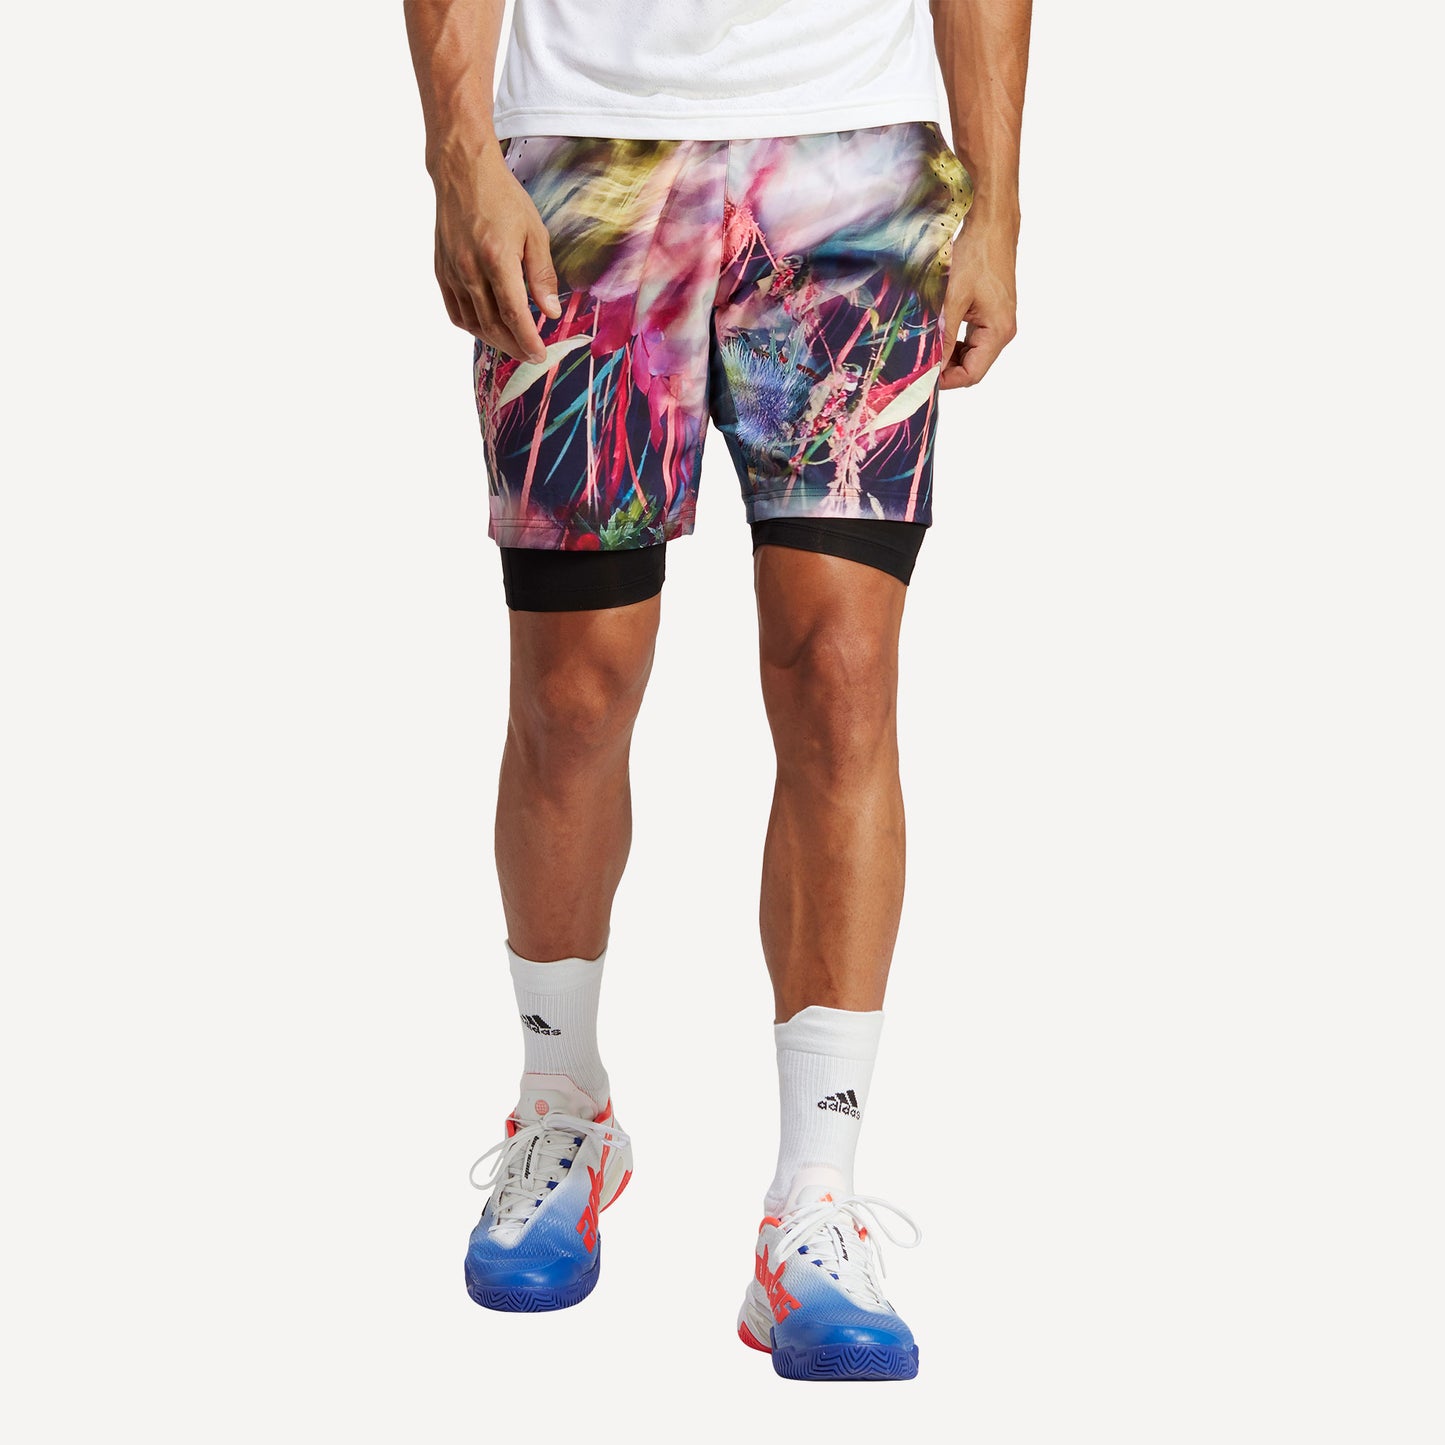 adidas Melbourne Ergo Men's Graphic Tennis Shorts Multicolor (1)